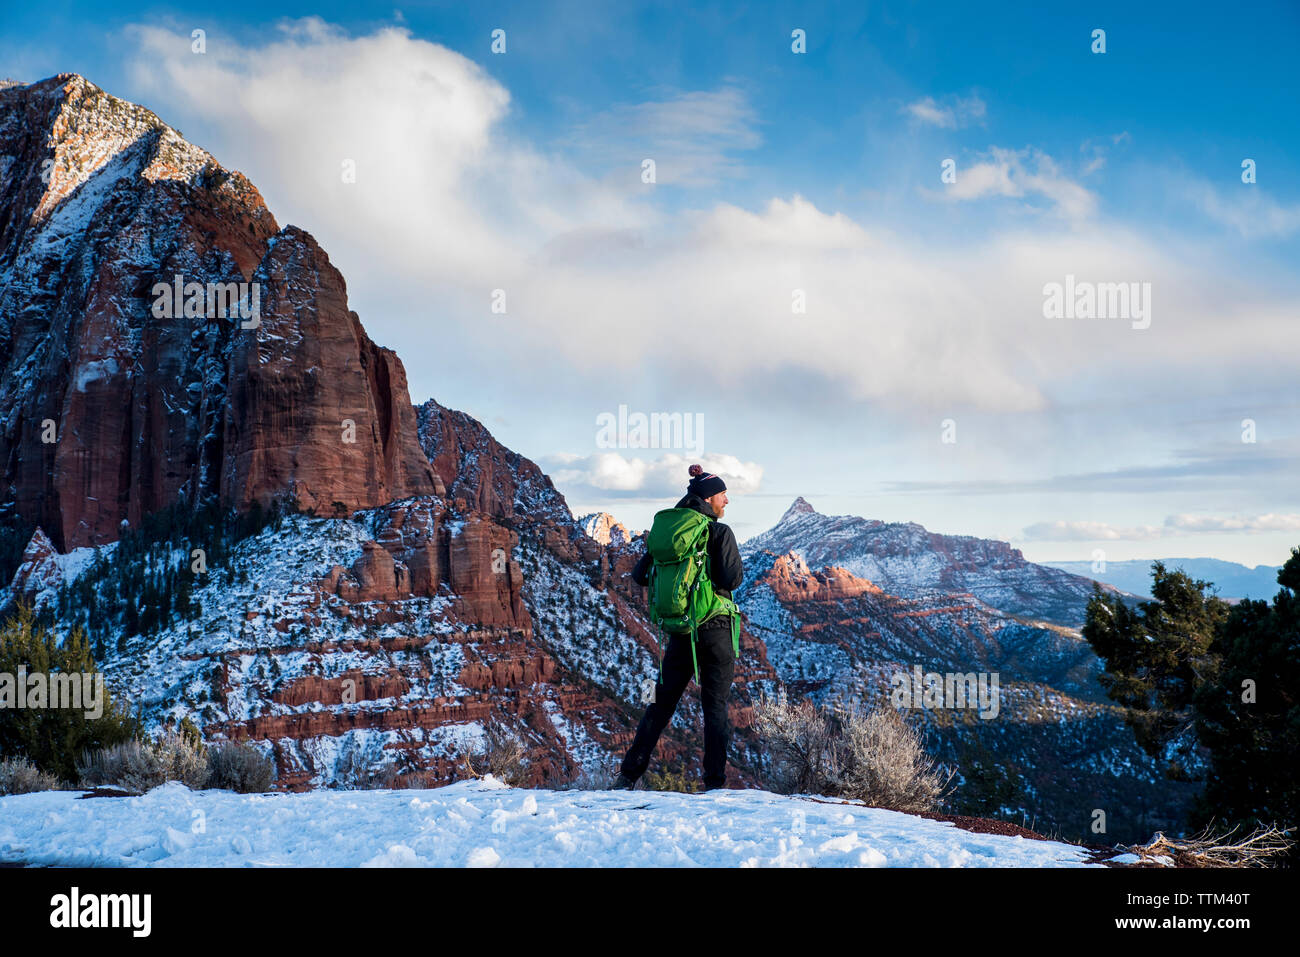 Vista posteriore dell'uomo con zaino verde permanente sulla neve in deserto contro formazioni di roccia e cielo nuvoloso durante il periodo invernale Foto Stock